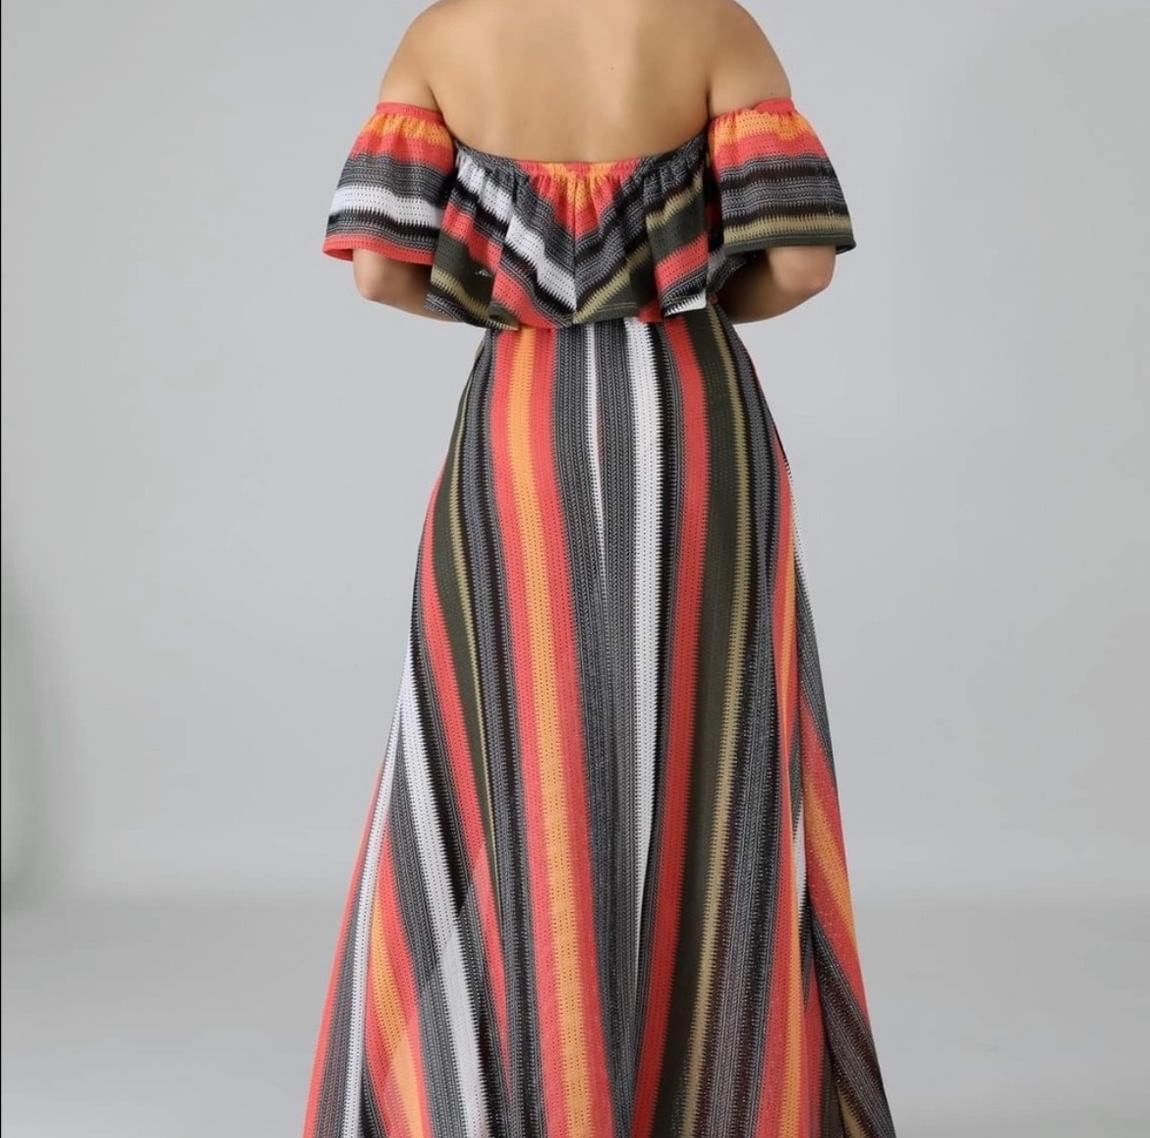 Size 6 Off The Shoulder Multicolor Side Slit Dress on Queenly